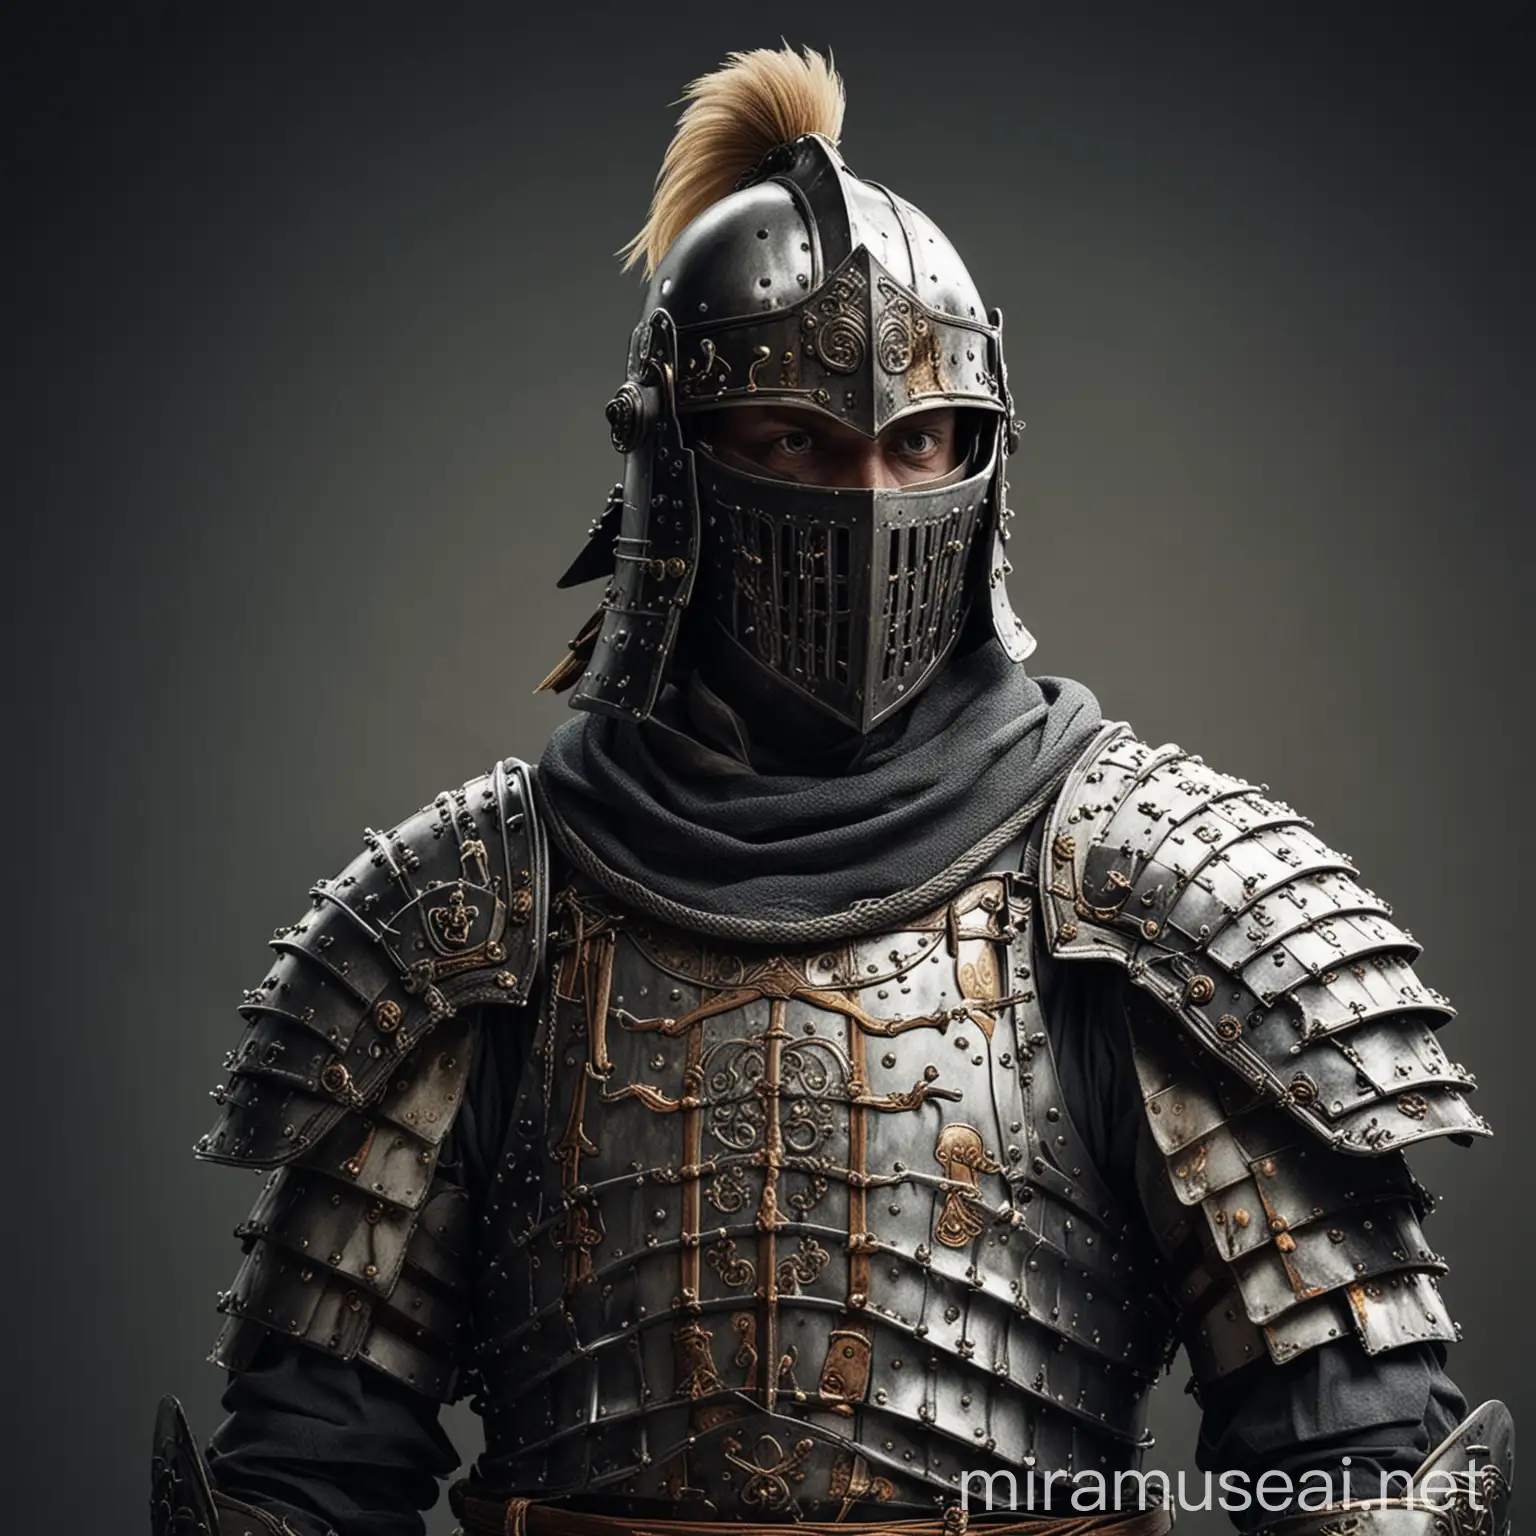 Teutonic knight wearing samurai armor